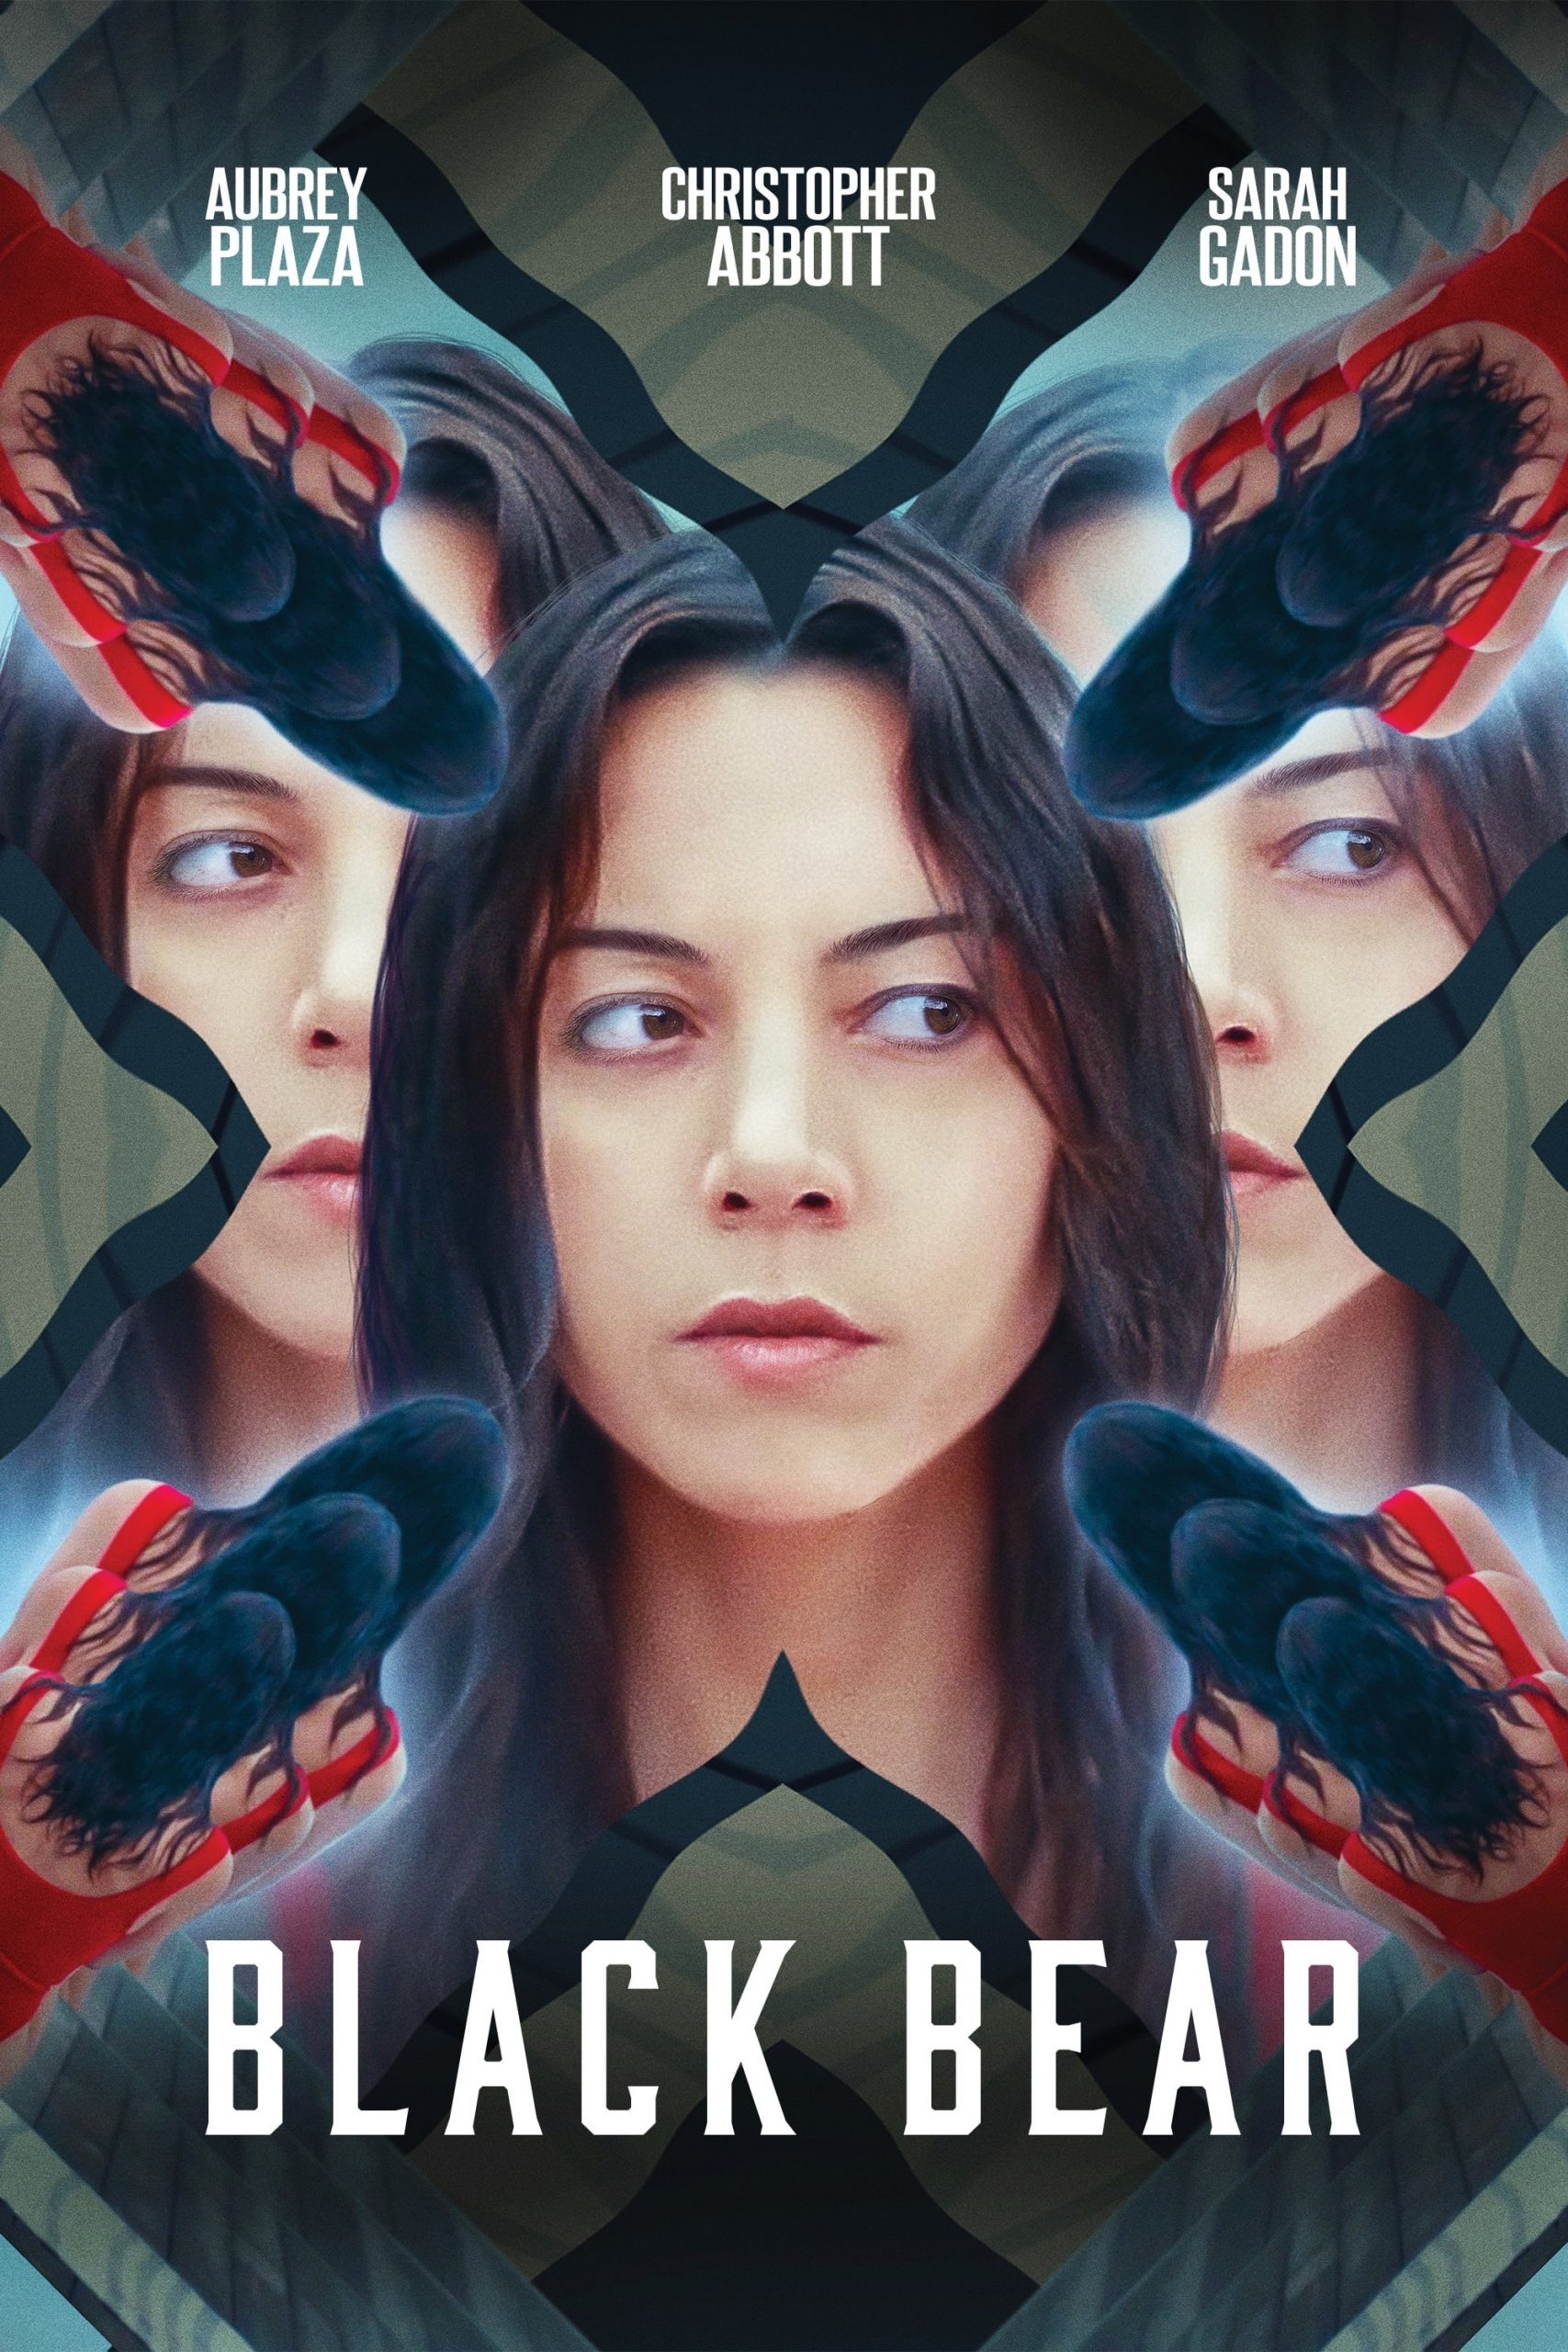 Black Bear [Sub-ITA] (2020)